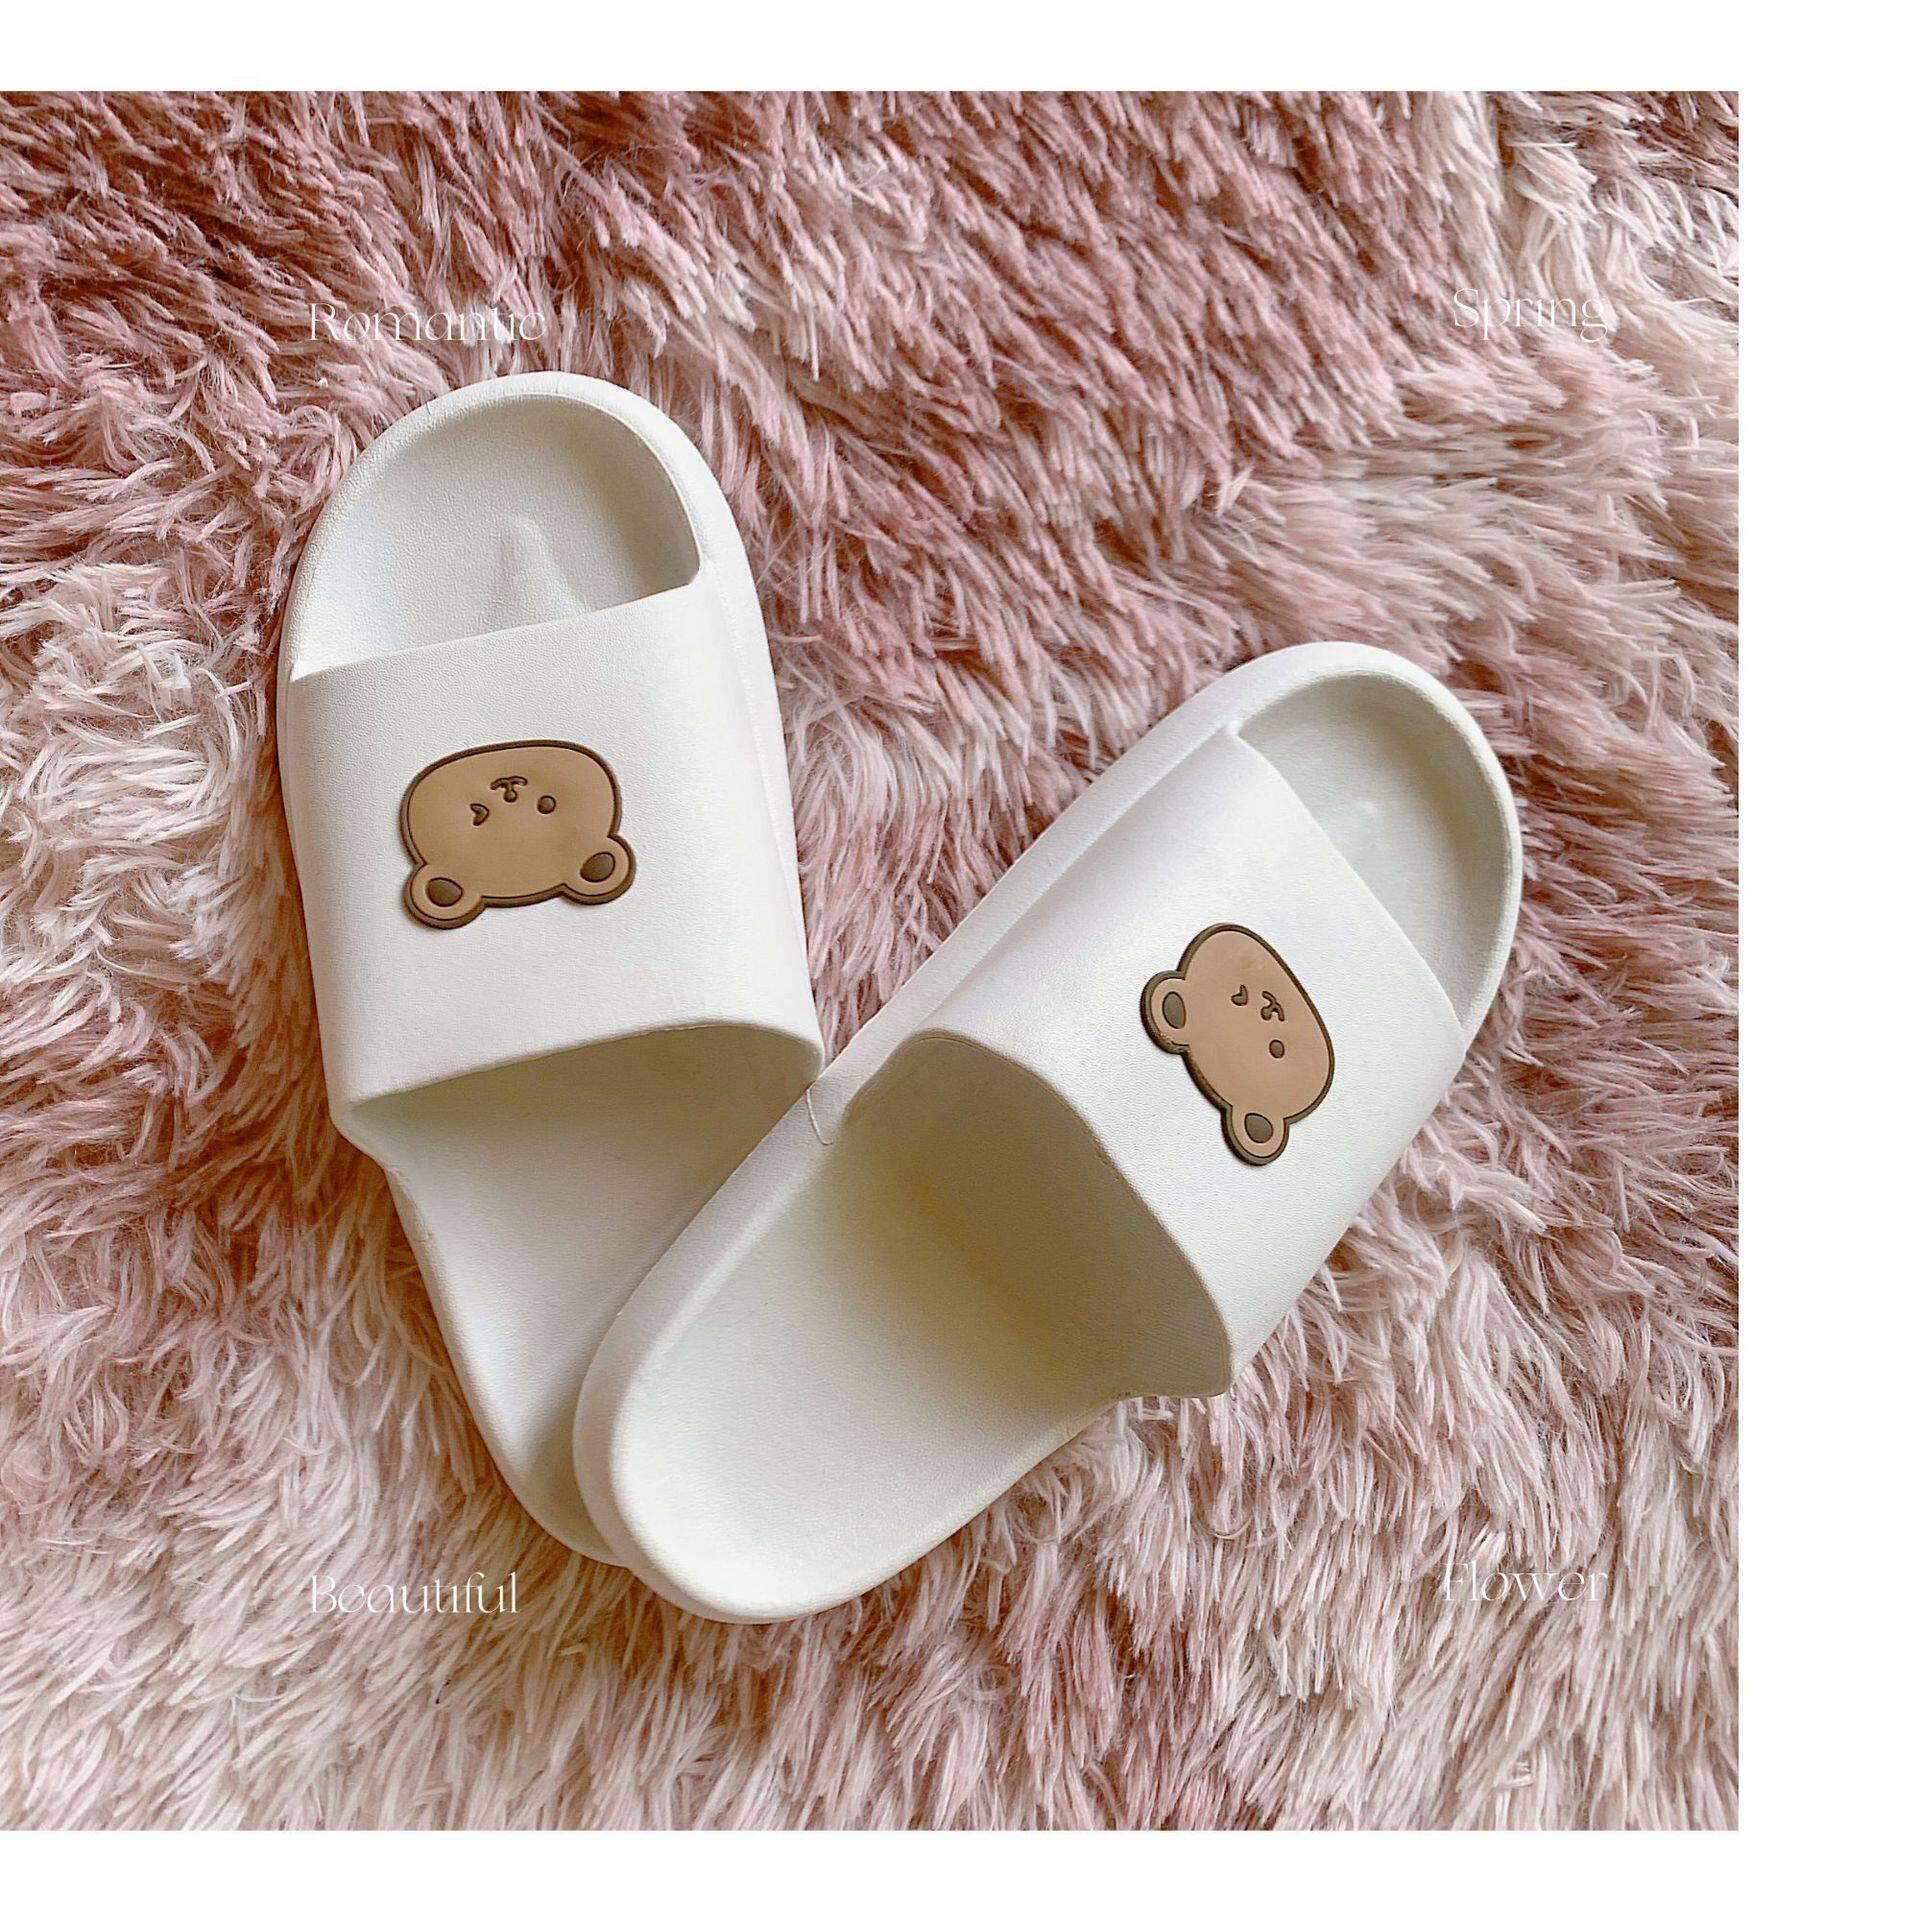 ภาพประกอบของ รองเท้าแตะขนมปังรูปหมีน่ารัก รองเท้าแตะผู้หญิงน่ารัก รองเท้าแตะผู้หญิงทันสมัย